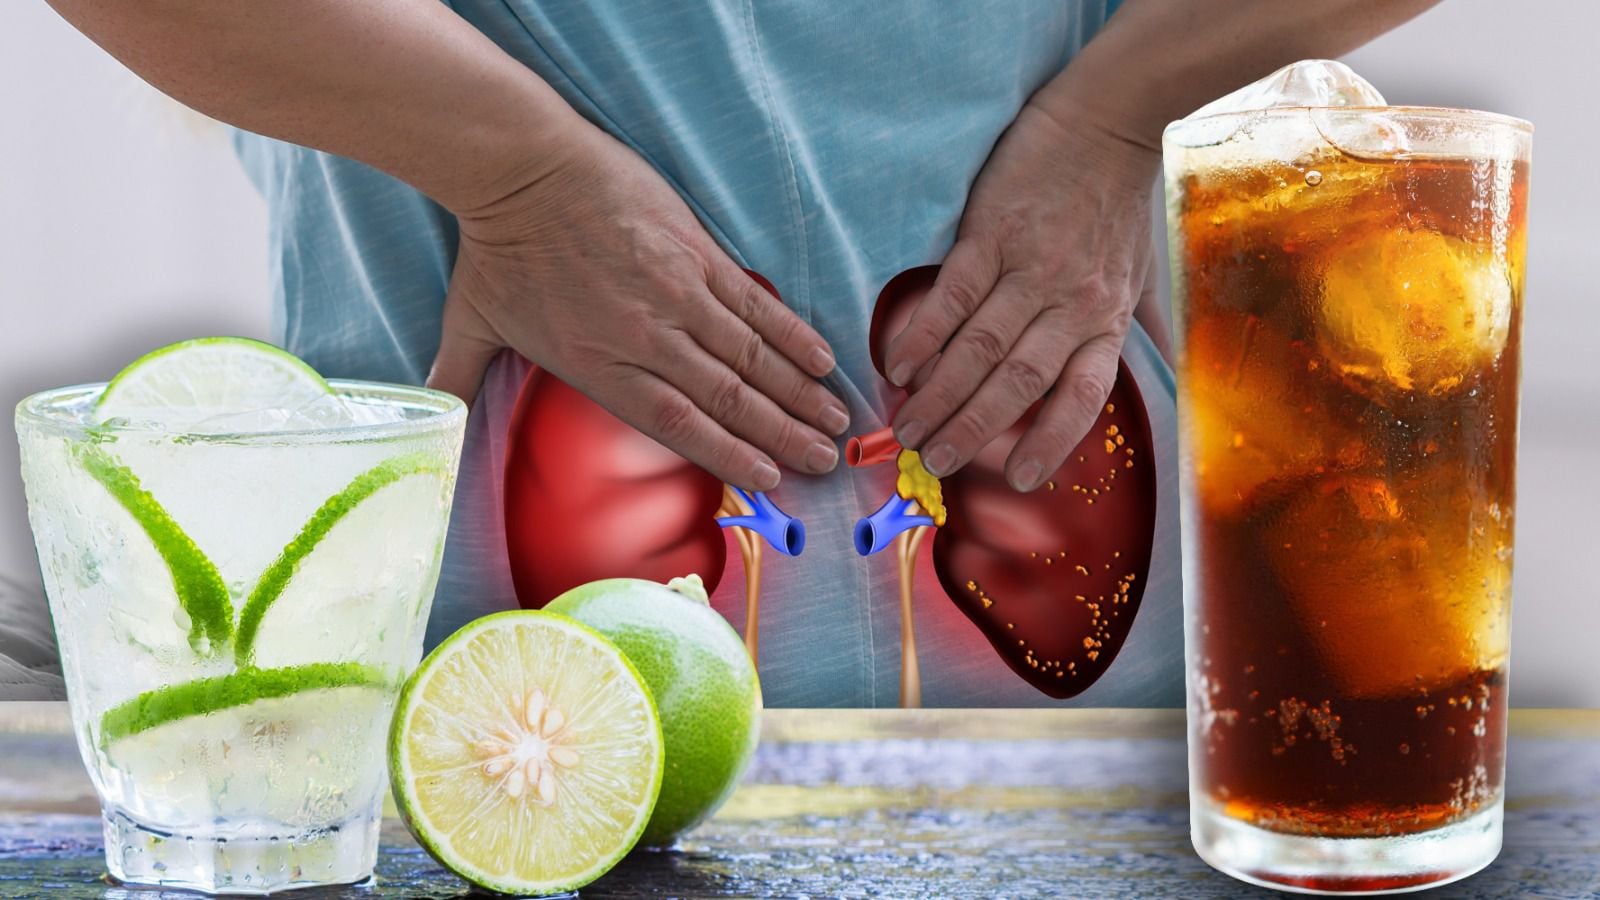 El exceso de refresco puede afectar a los riñones, por lo que altenativas como el agua con limón ayudan a cambiar tus hábits. (Fotoarte: Andrea López Trejo | El Financiero)